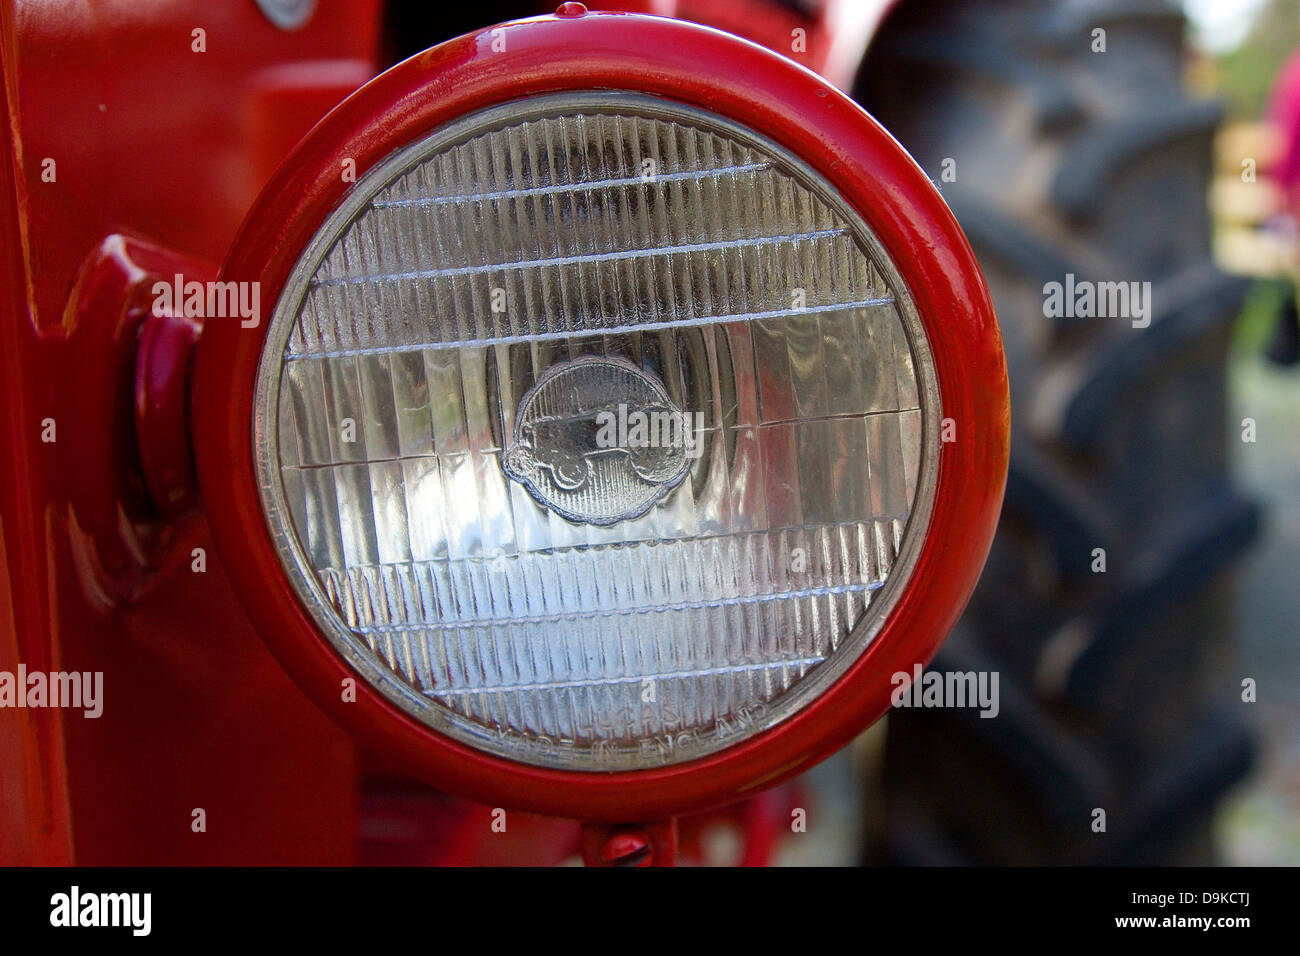 Nahaufnahme von roten Oldtimer-Traktor Scheinwerfer Stockfotografie - Alamy